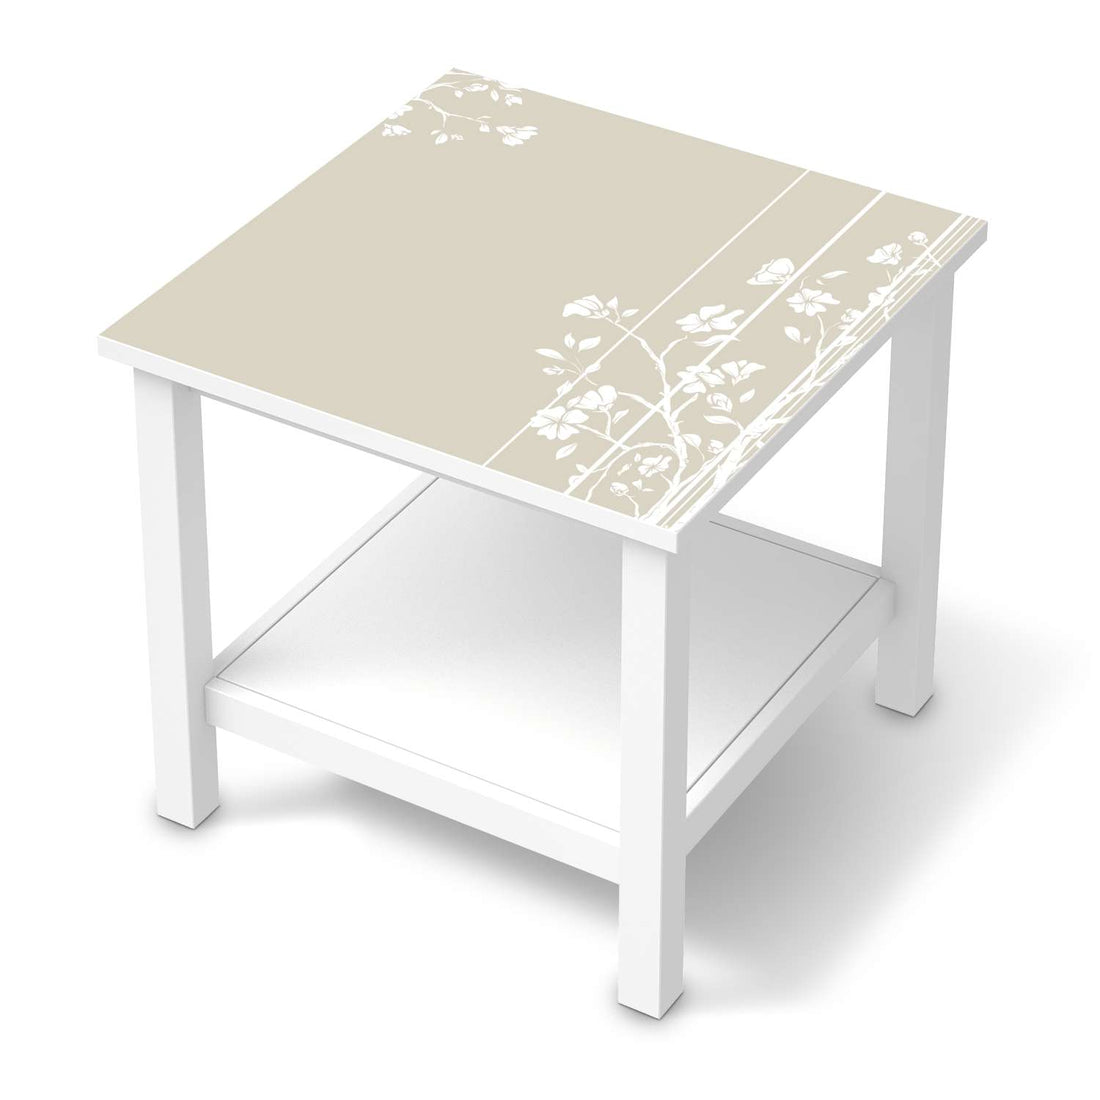 Möbel Klebefolie Florals Plain 3 - IKEA Hemnes Beistelltisch 55x55 cm  - weiss